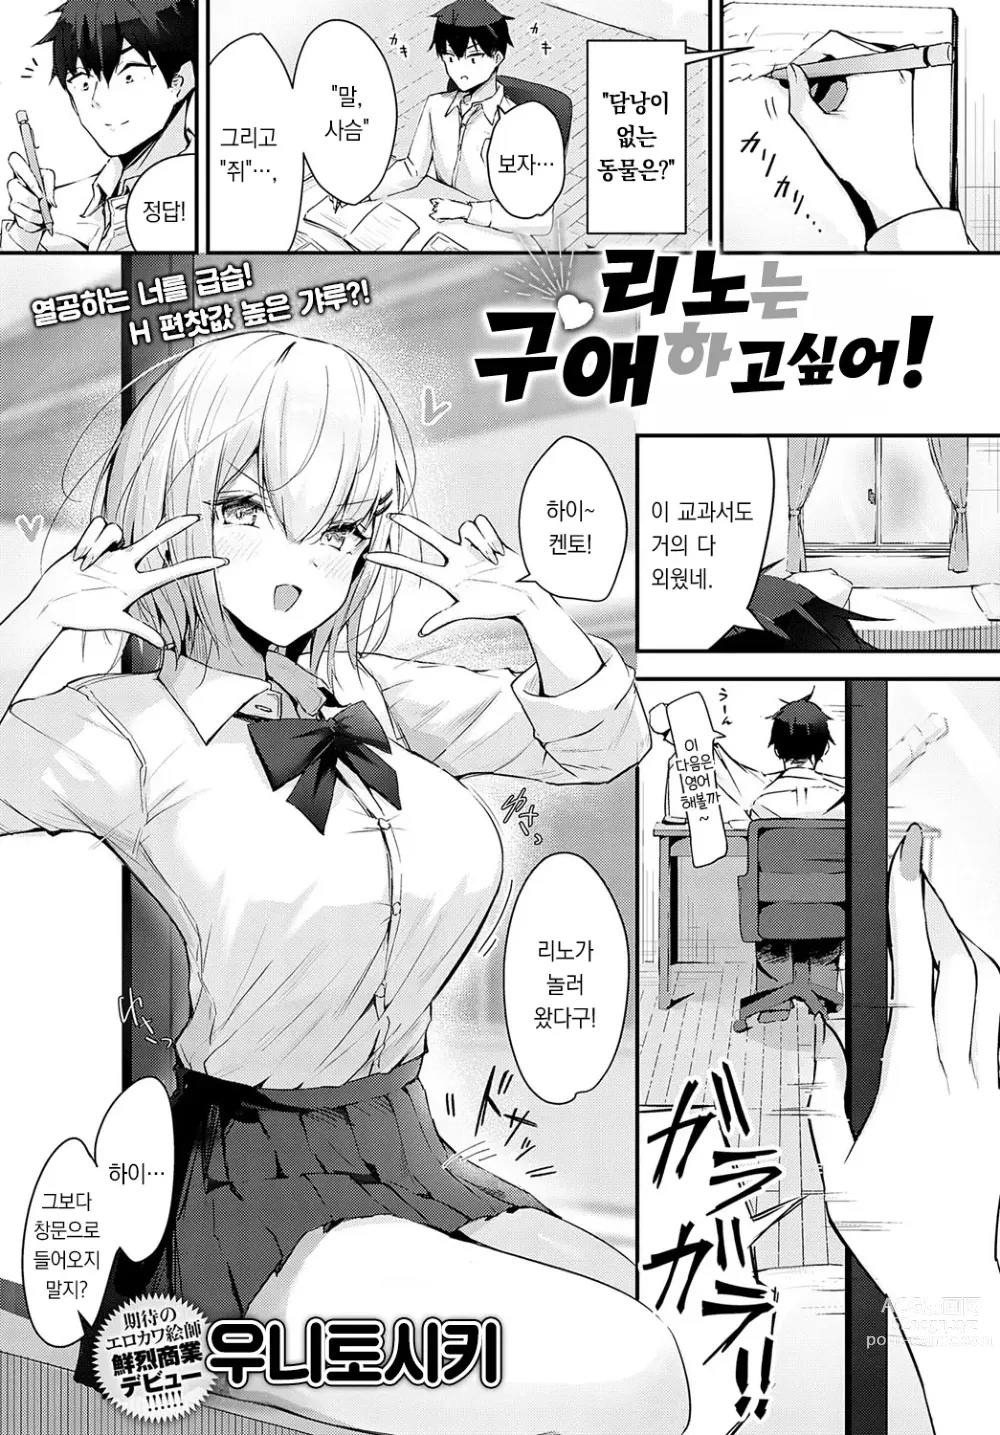 Page 2 of manga 리노는 구애하고 싶어!